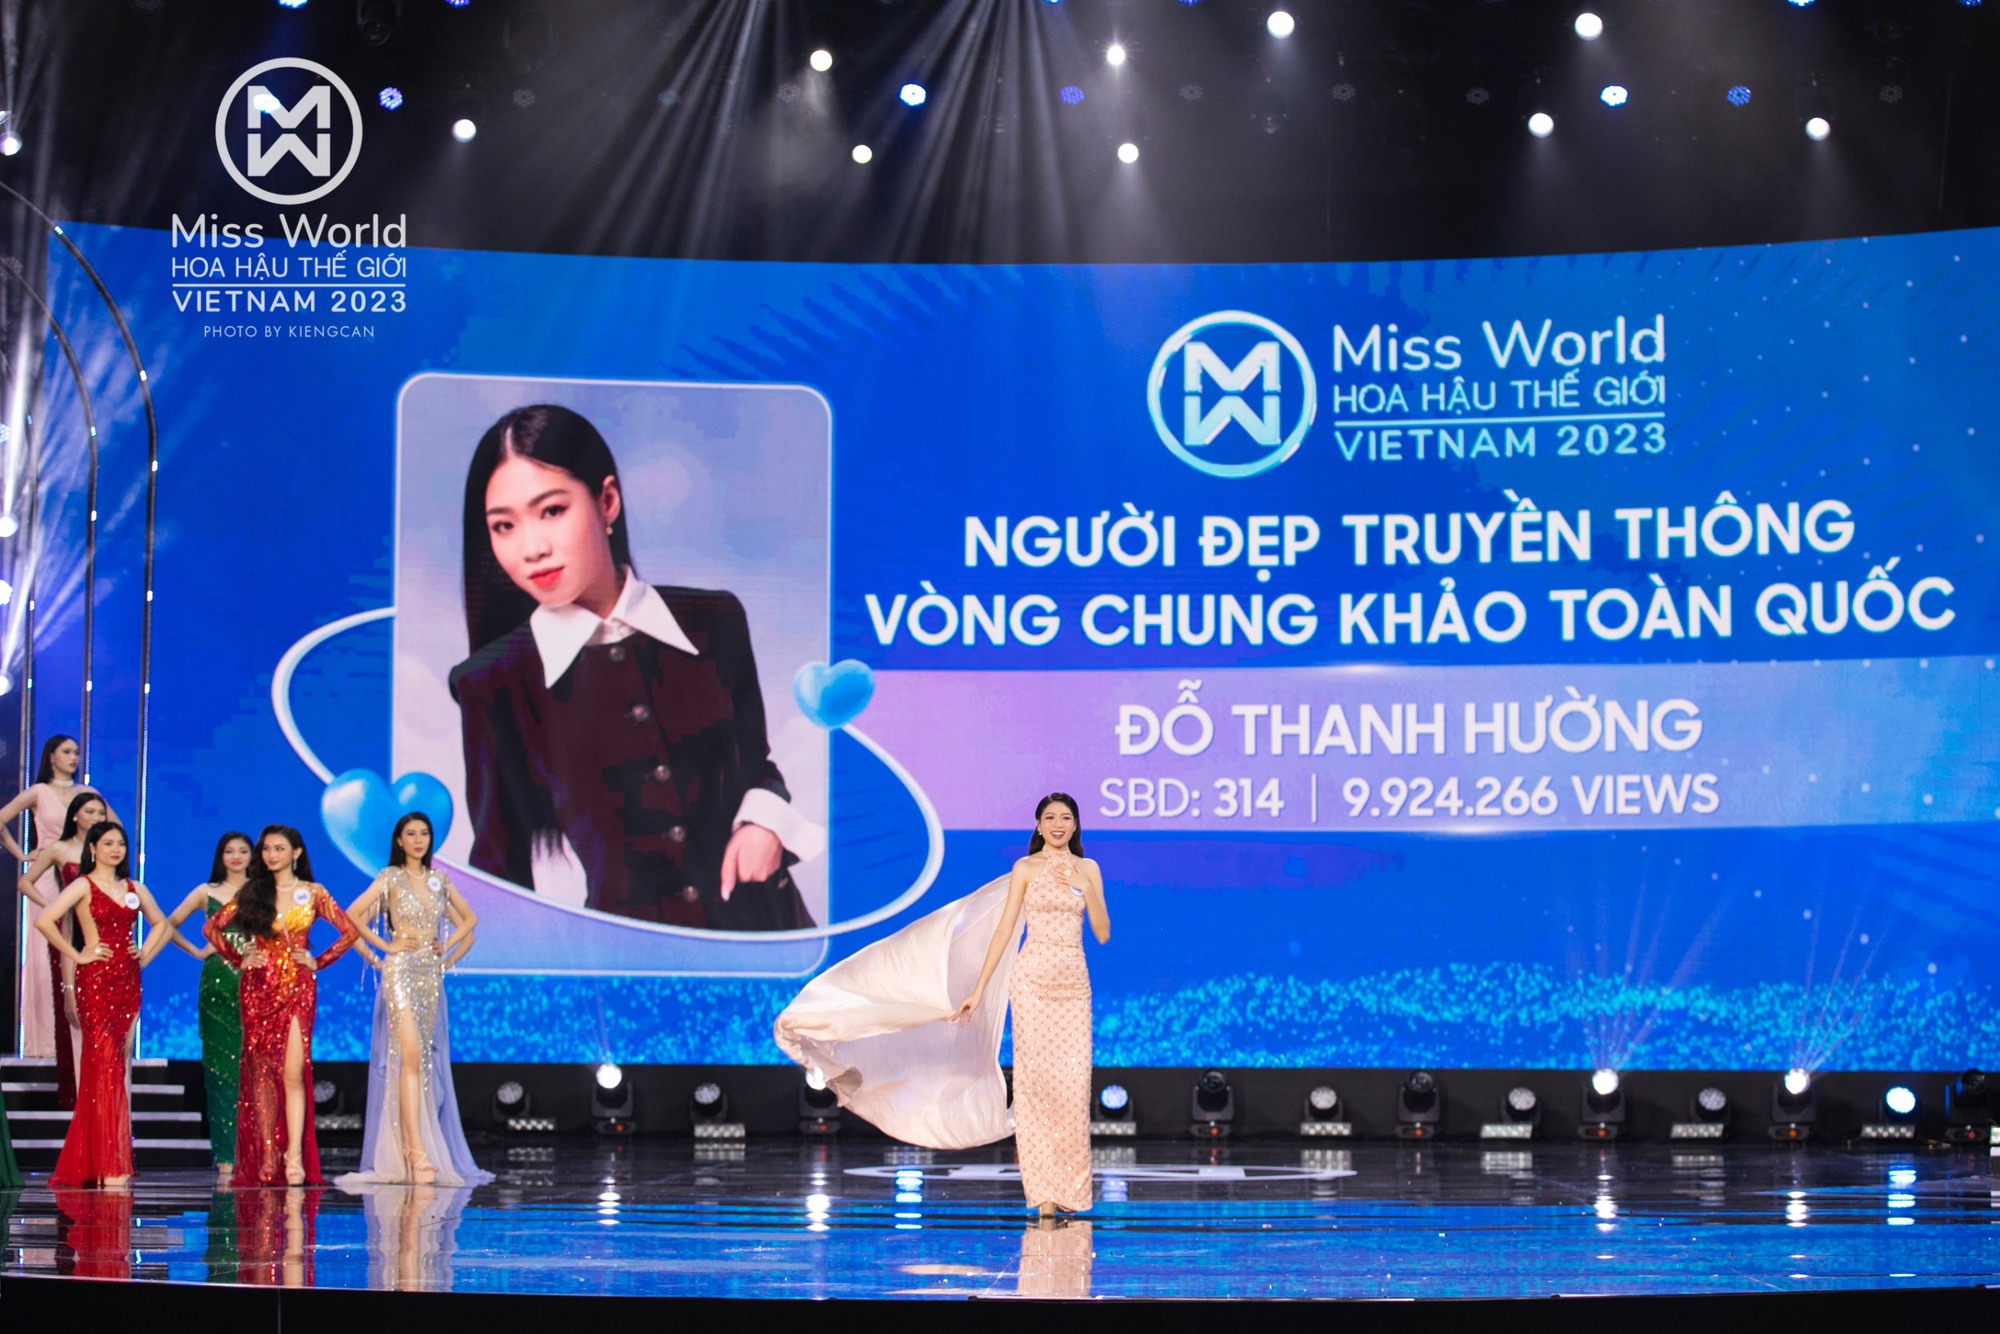 Nữ sinh đoạt giải Người đẹp truyền thông Vòng chung khảo Miss World Vietnam 2023 - Ảnh 1.